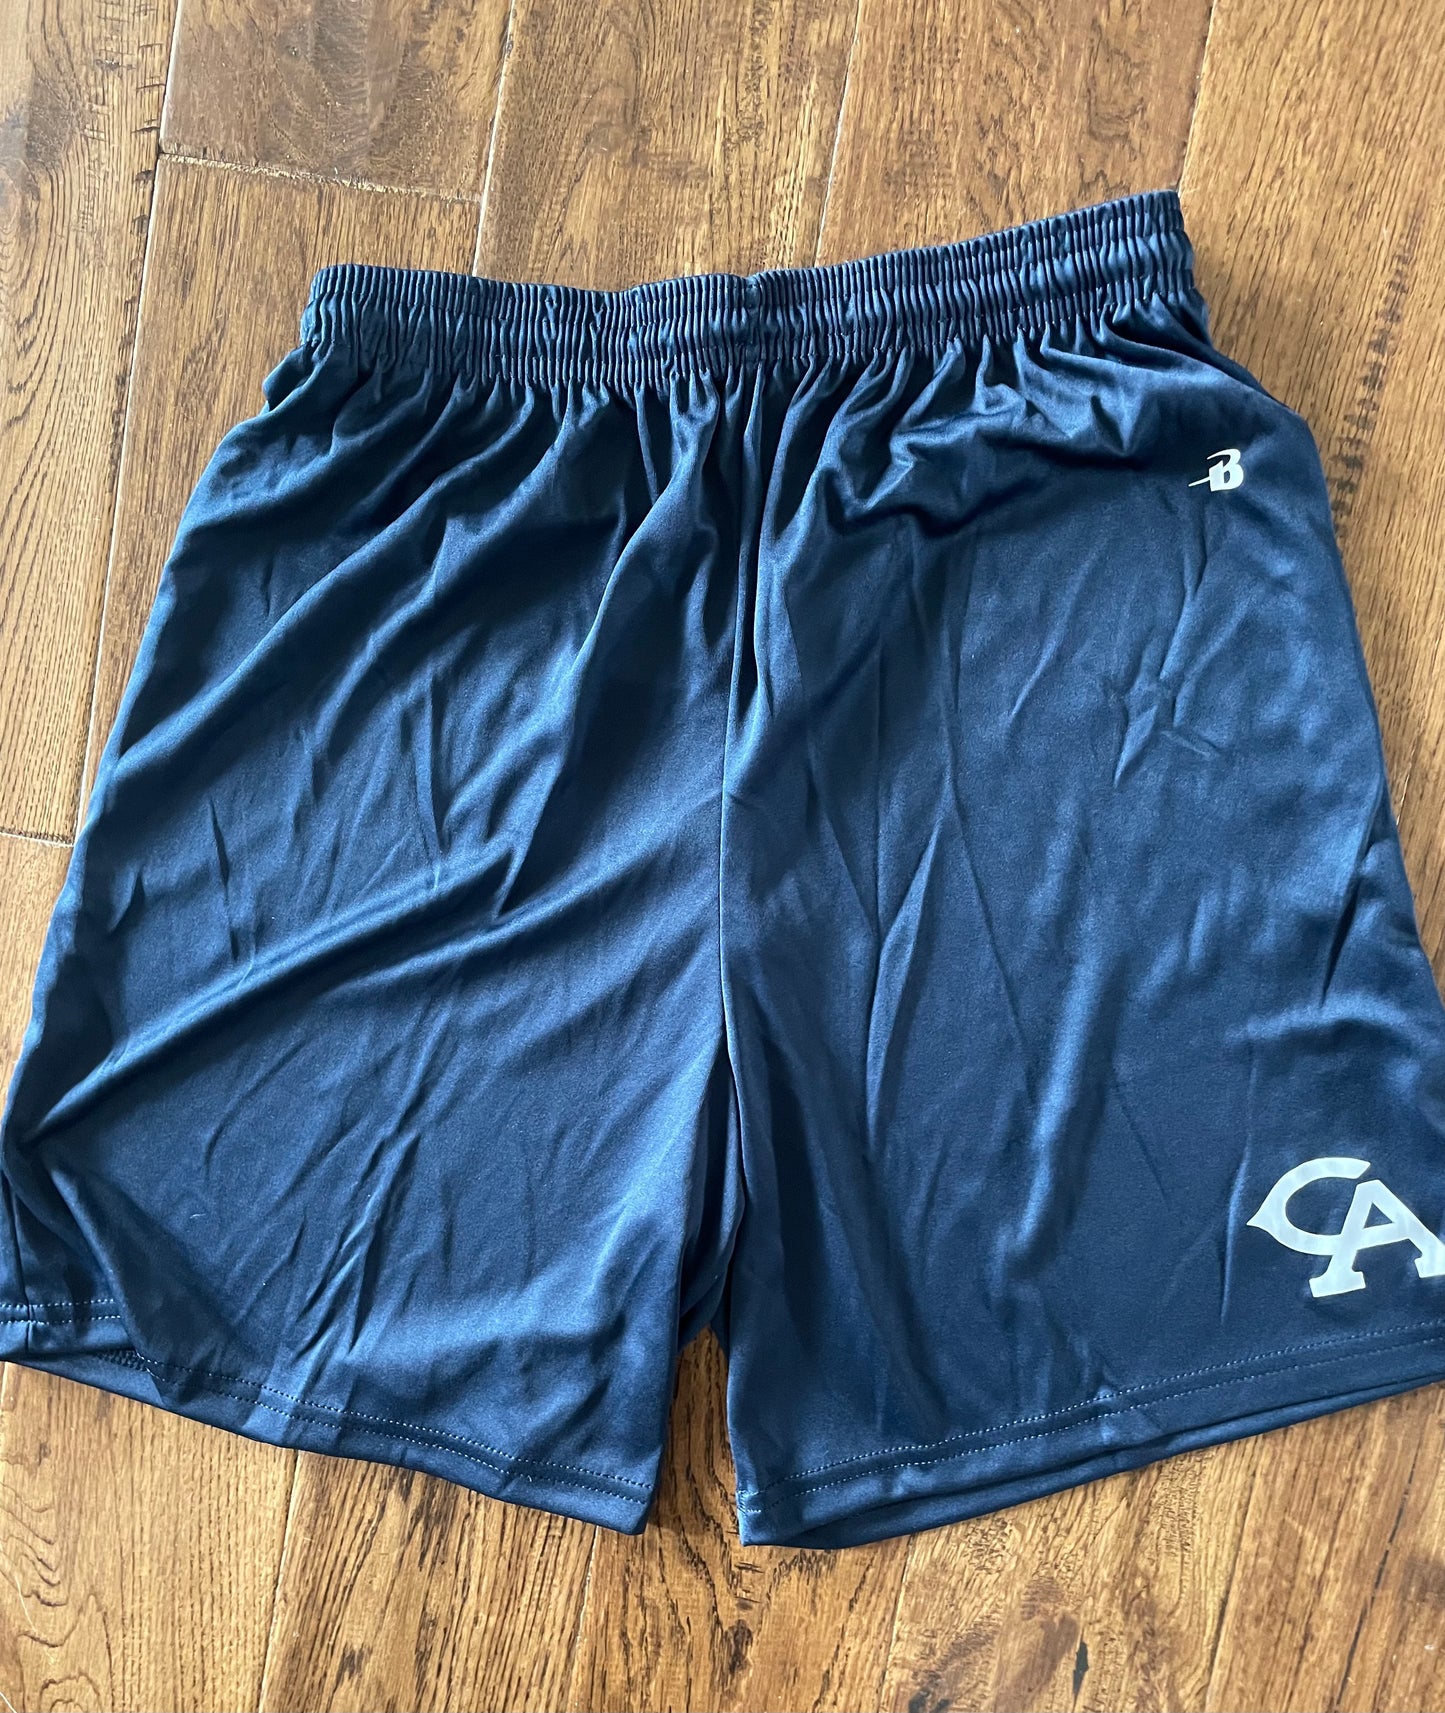 New Dri-Fit PE Shorts